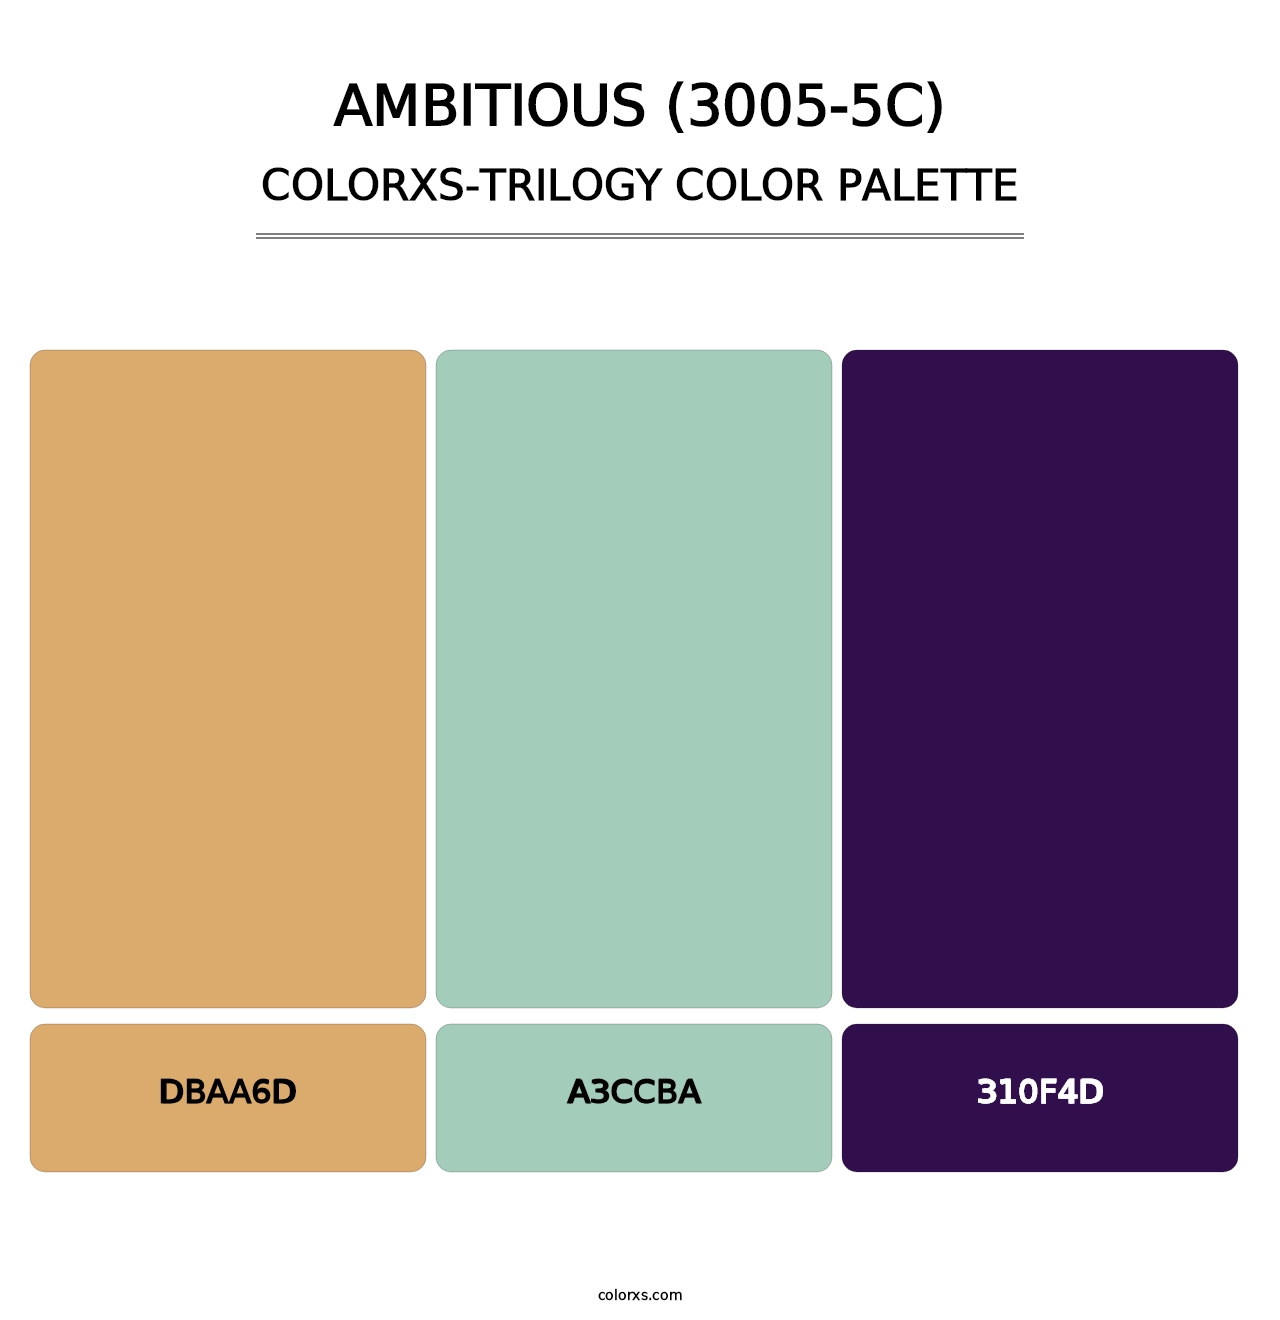 Ambitious (3005-5C) - Colorxs Trilogy Palette